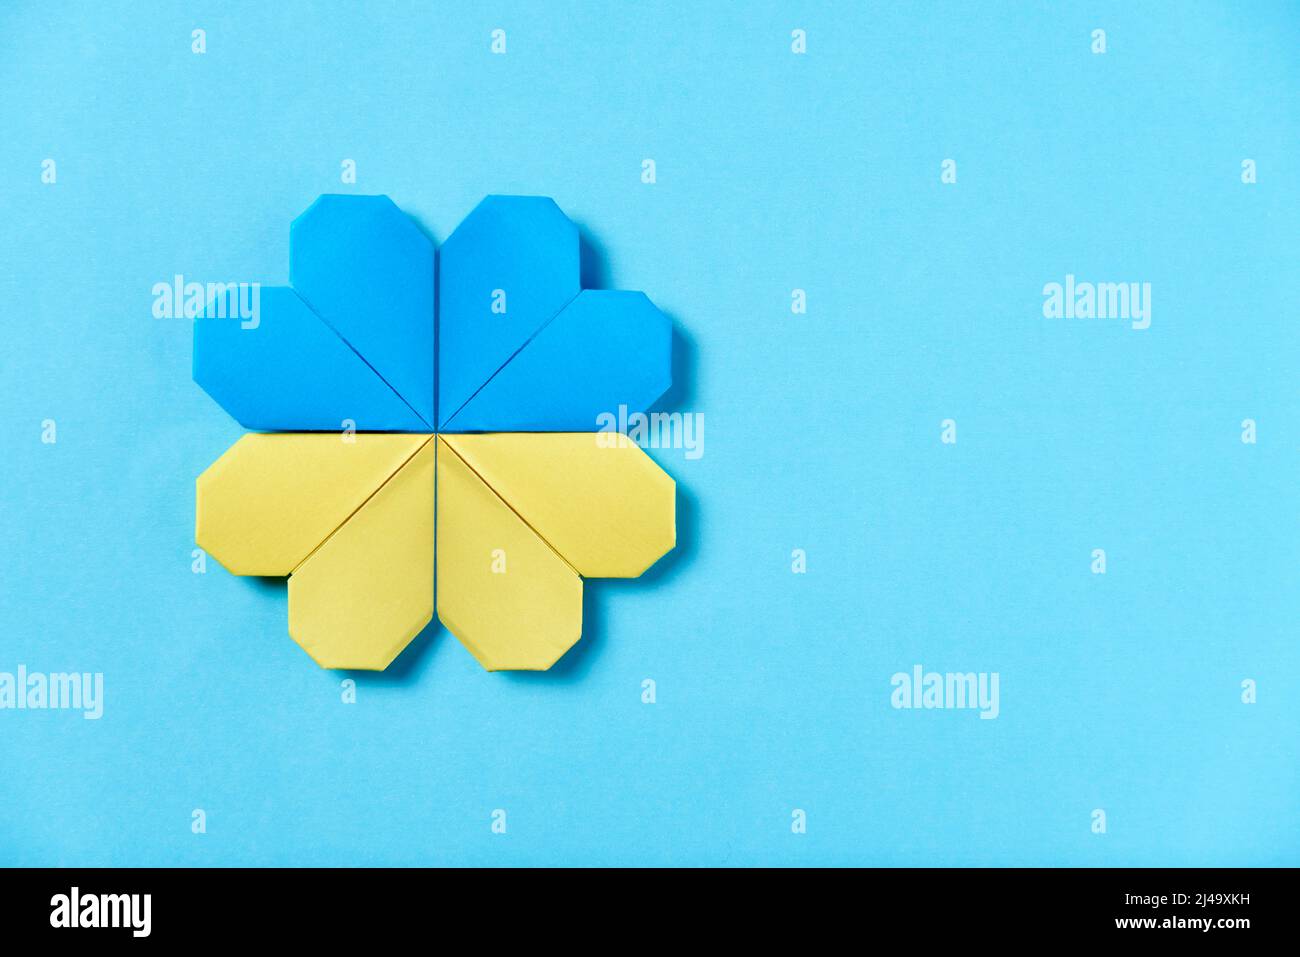 Fiore di origami blu e giallo, colori della bandiera Ucraina. Immagine simbolica concettuale a sostegno dell'Ucraina durante l'aggressione militare russa. Foto Stock